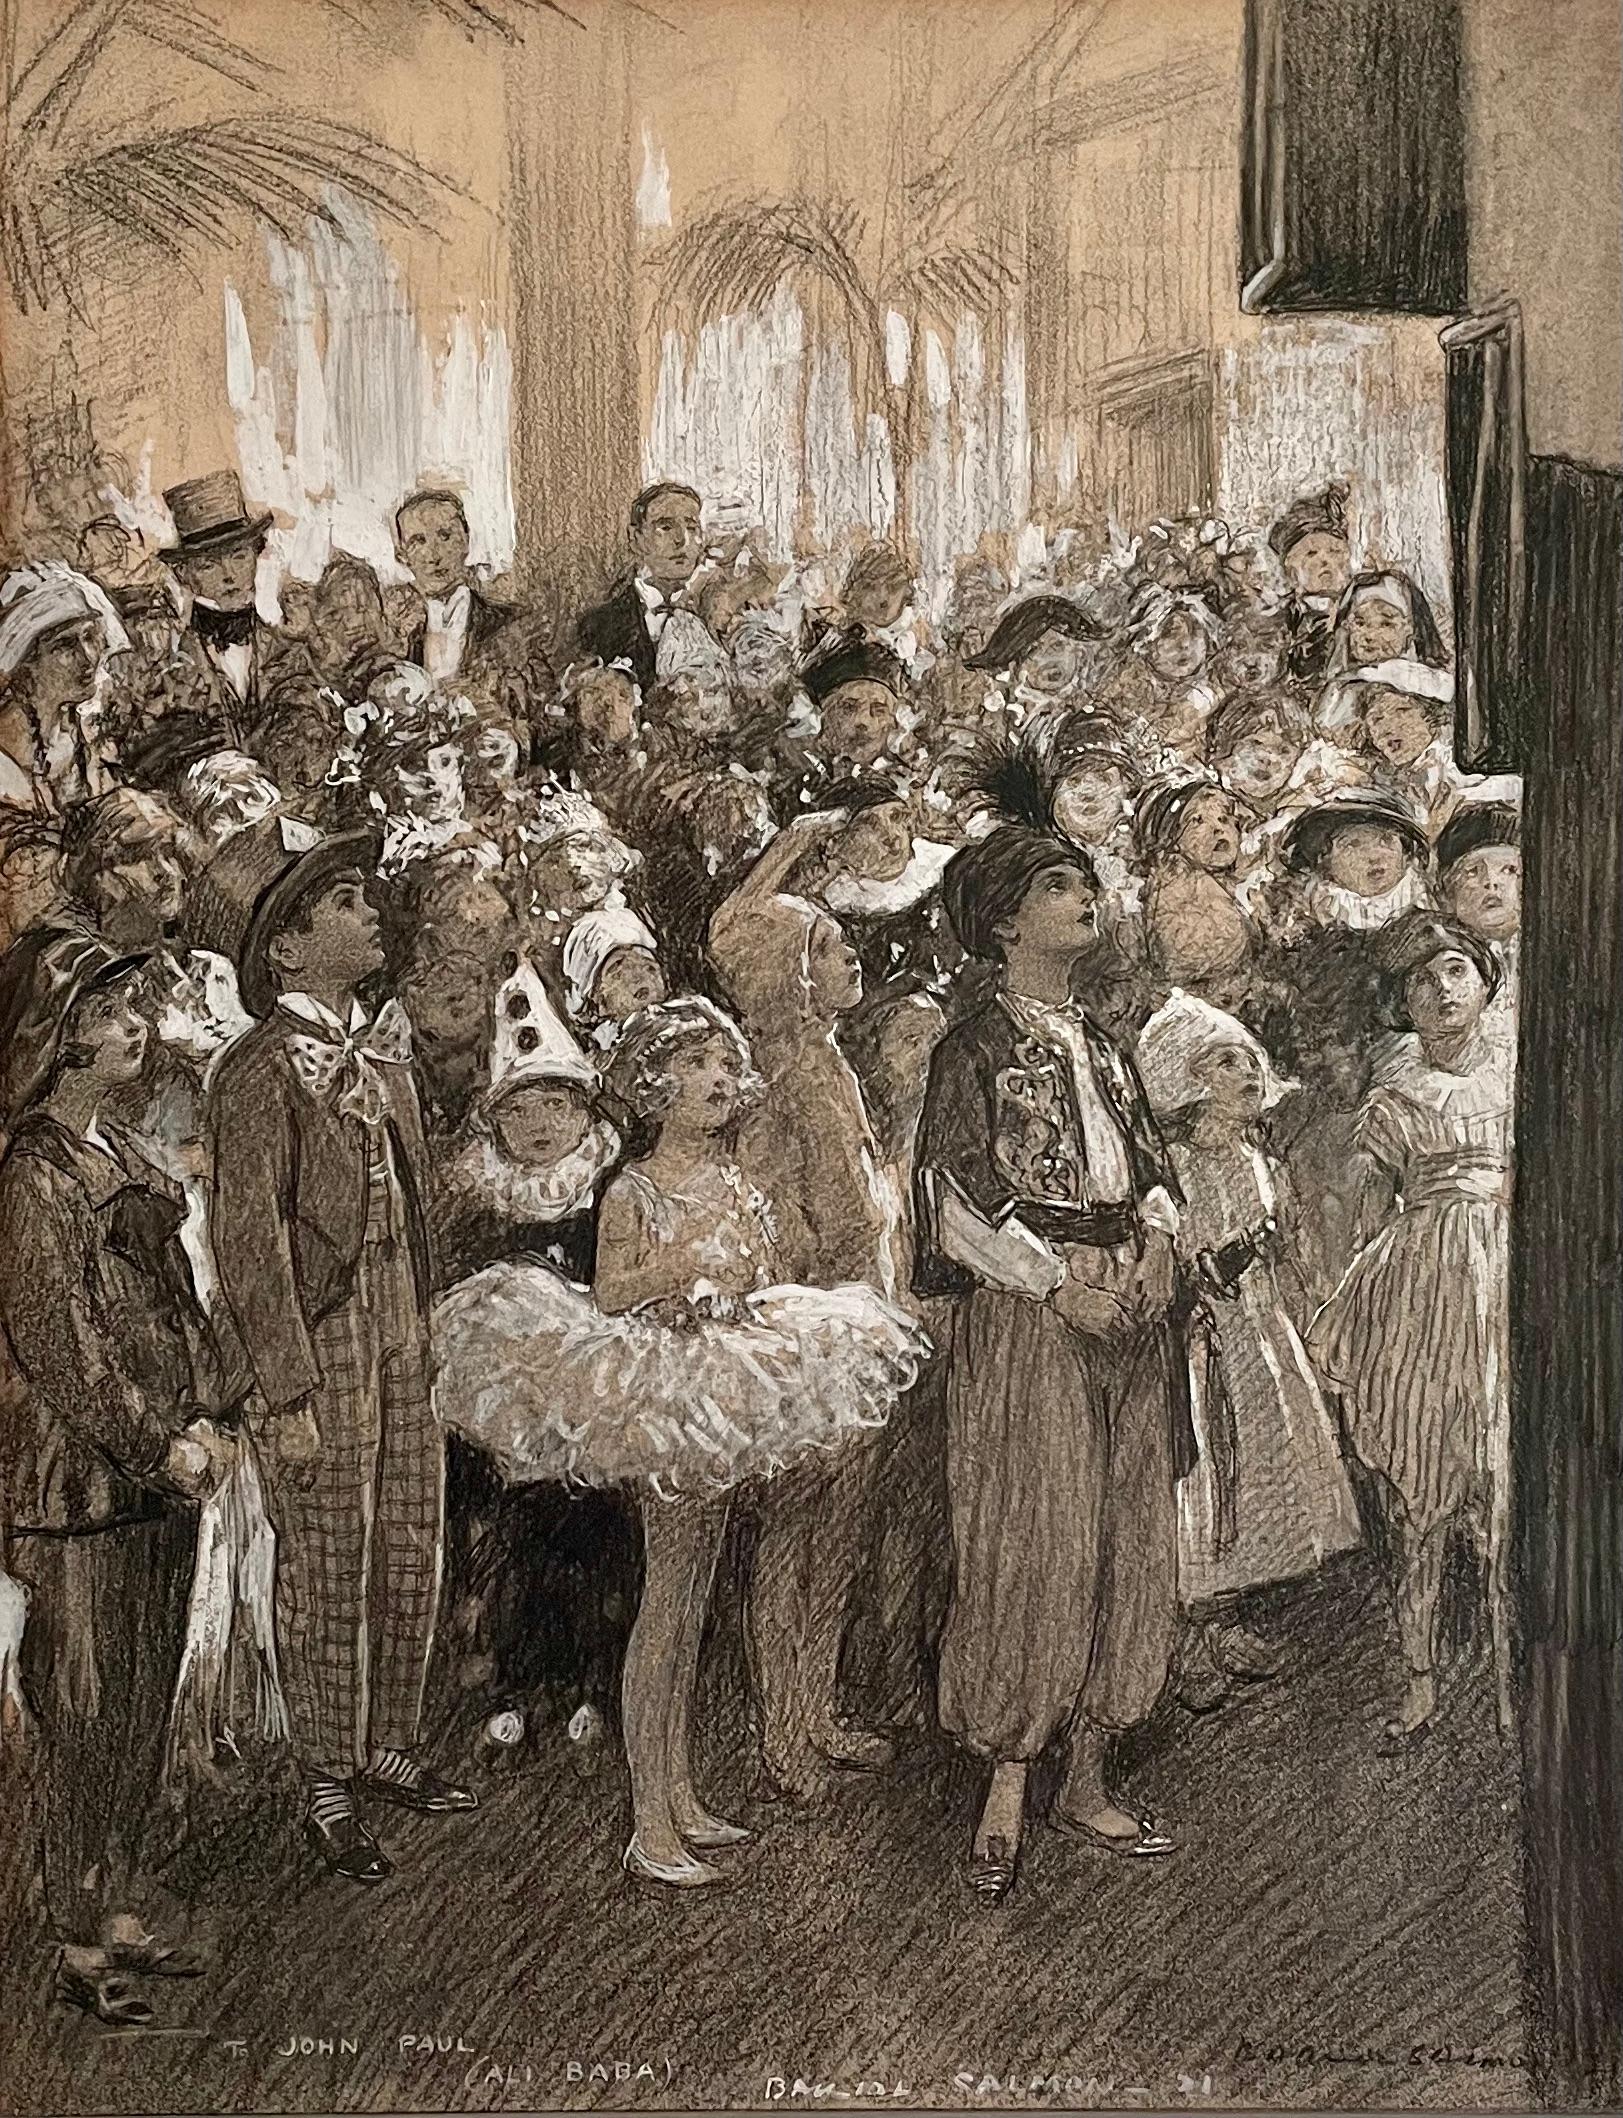 ARTHUR JOHN BALLIOL LACHS
(1868-1953)

Der Entertainer

Zweimal signiert, datiert und l.c. gewidmet:  AN JOHN PAUL (ALI BABA) BALLIOL SALMON '21
Schwarze Kreide mit Weiß gehöht
Gerahmt

44 x 34 cm, 17 ¼ x 13 ¼ Zoll.
(Rahmengröße 64,5 x 53,5 cm., 25